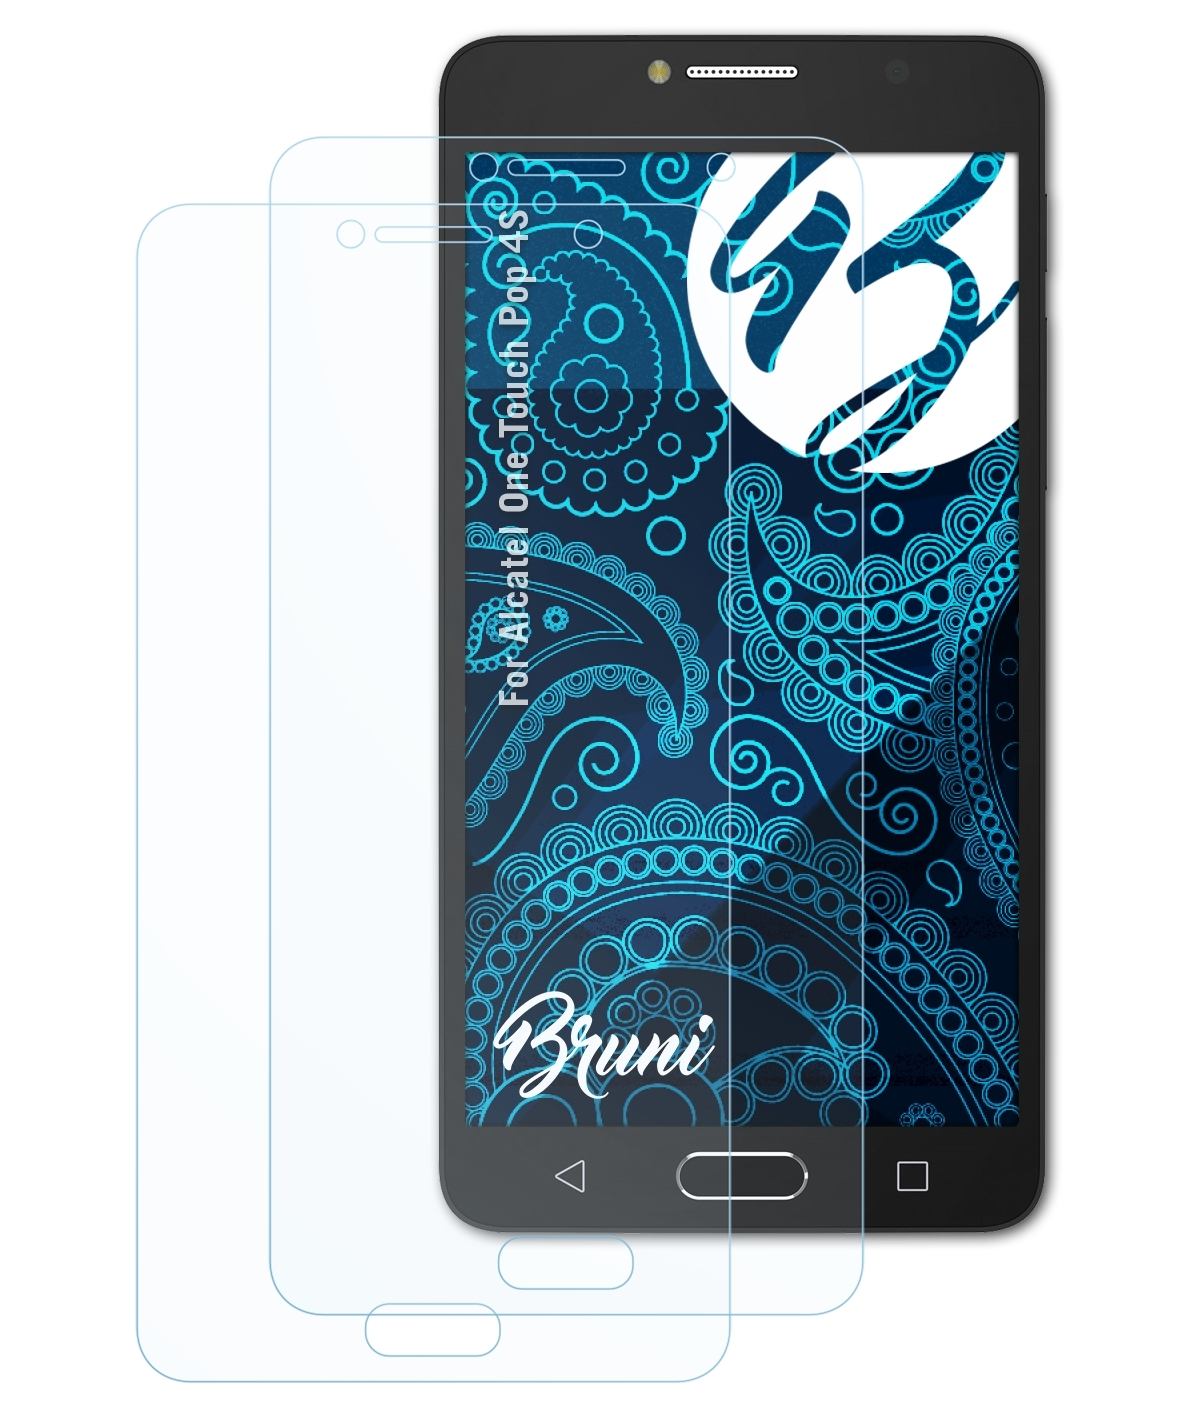 BRUNI 2x Basics-Clear 4S) Schutzfolie(für Touch Pop Alcatel One